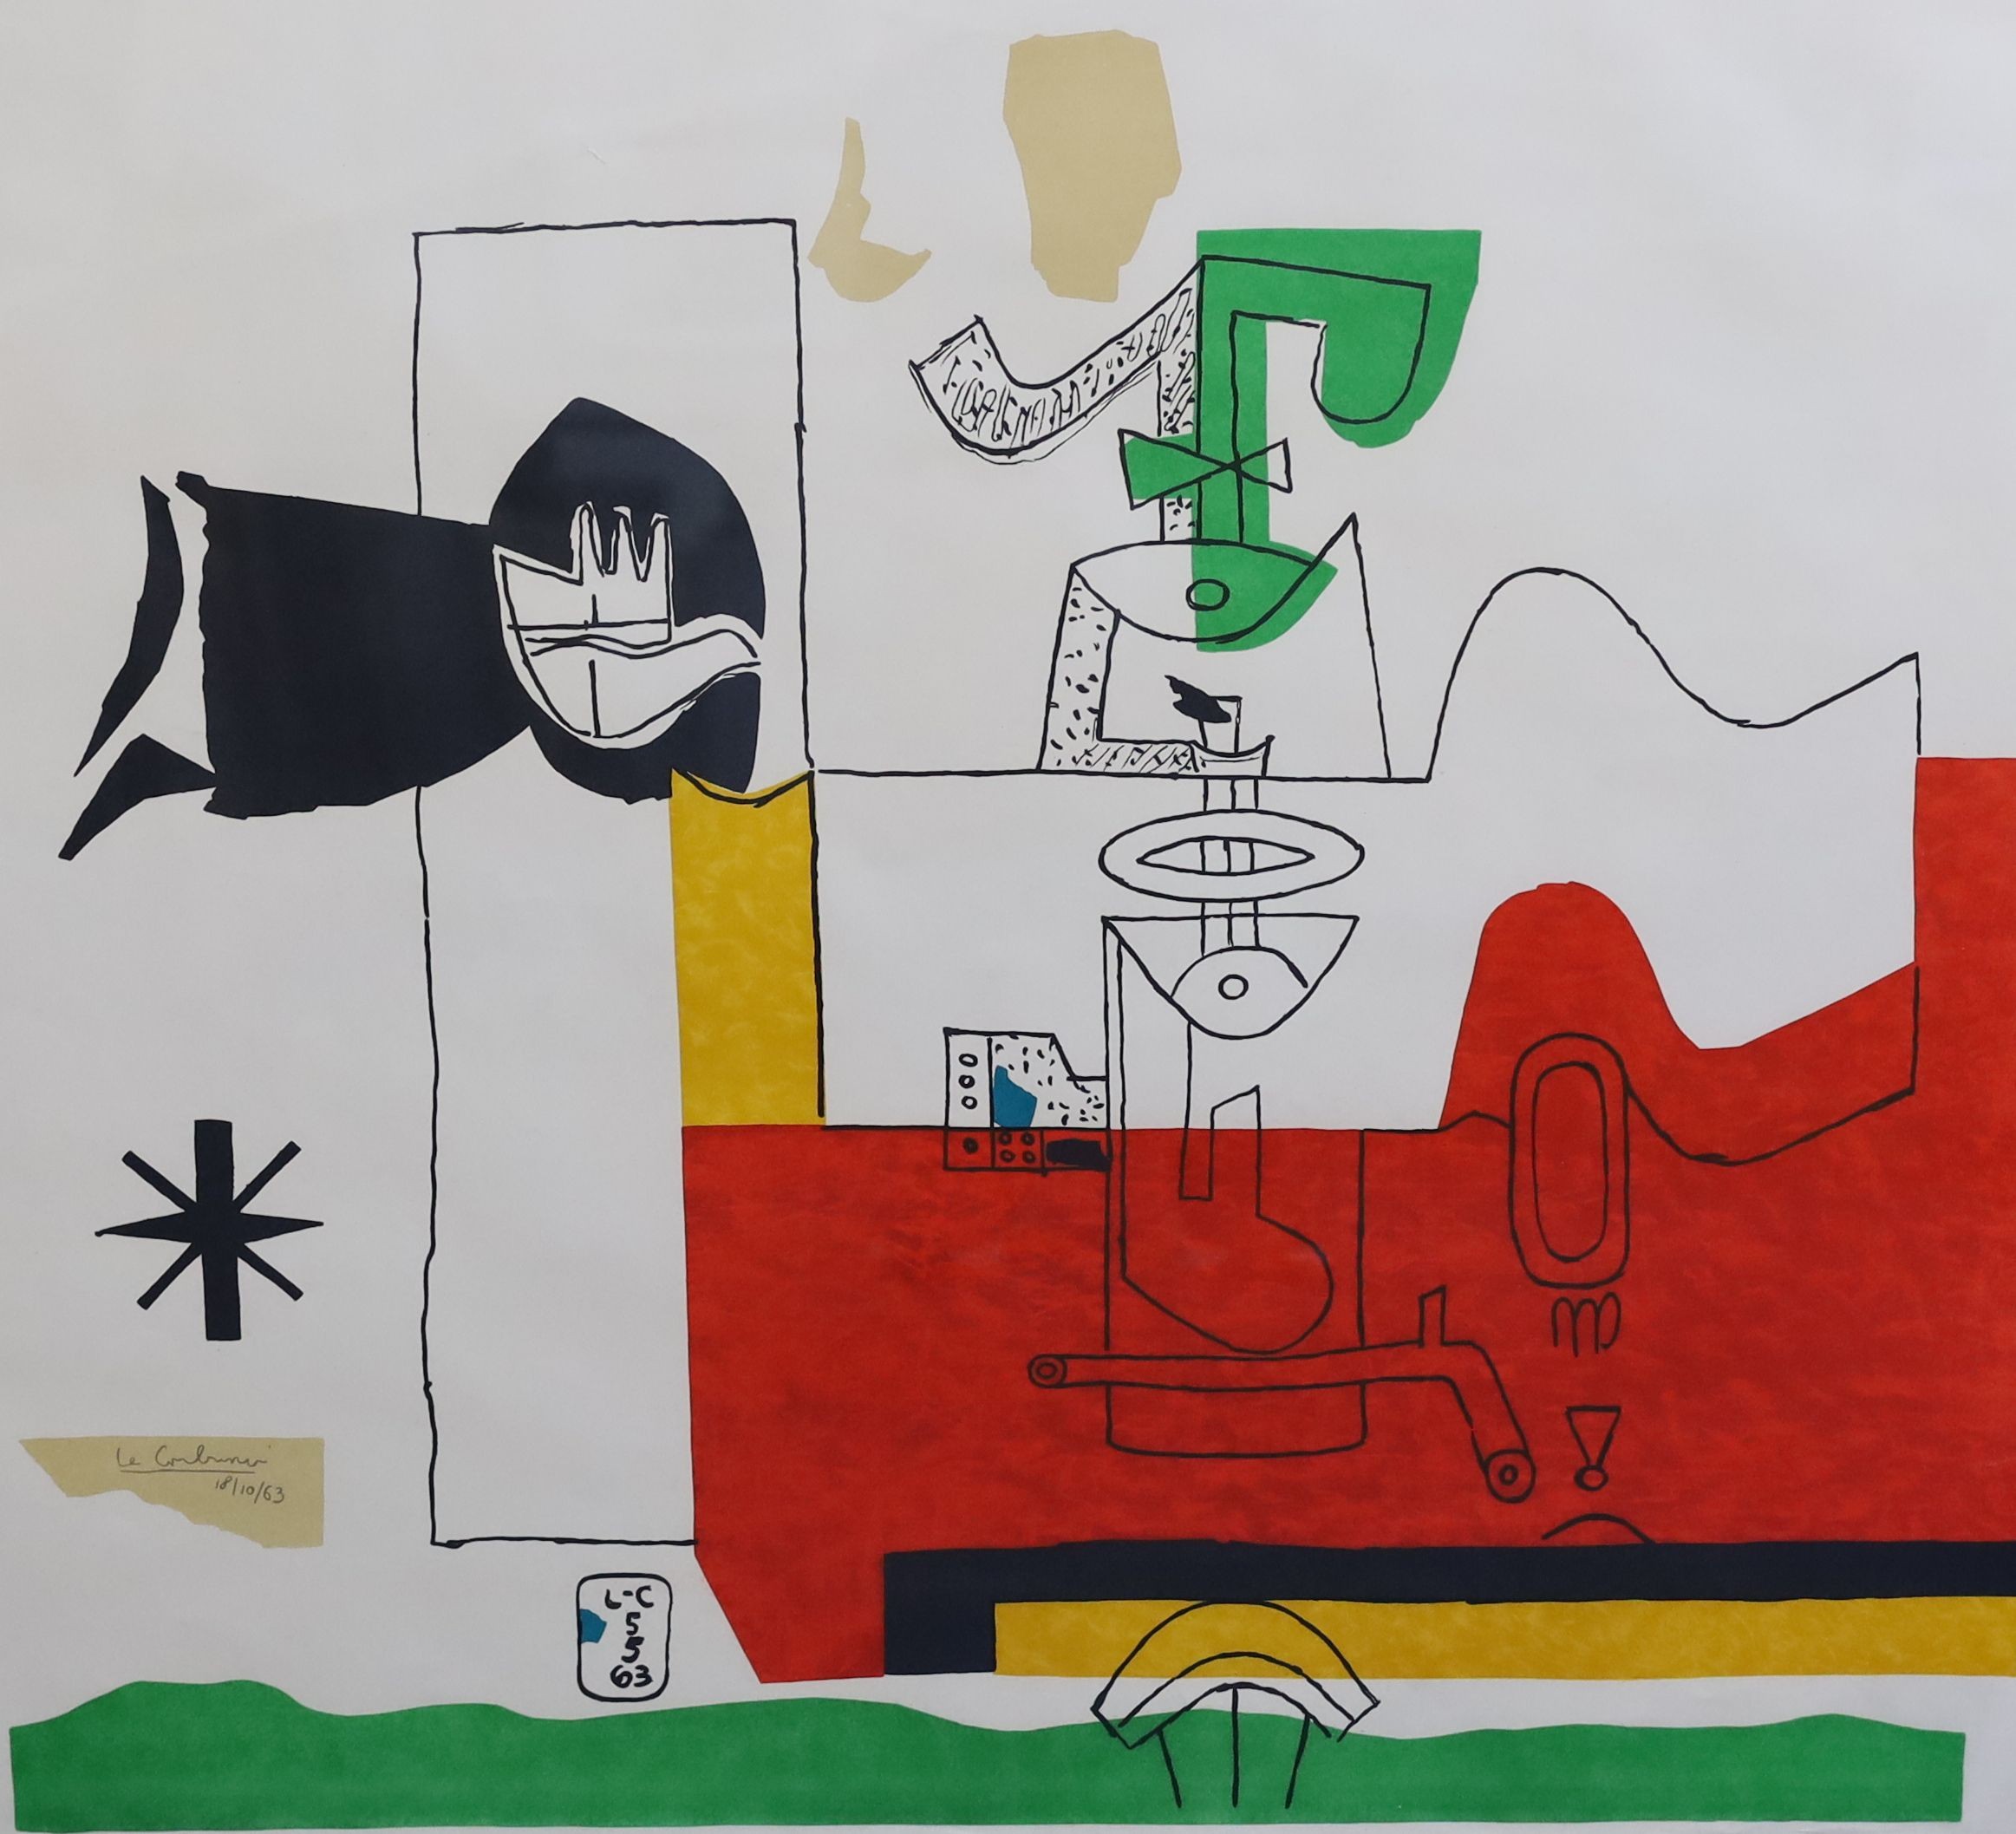 Jean Francois Le Corbusier (1887-1965), Totem 1963, colour lithograph, 73 x 80.5cm